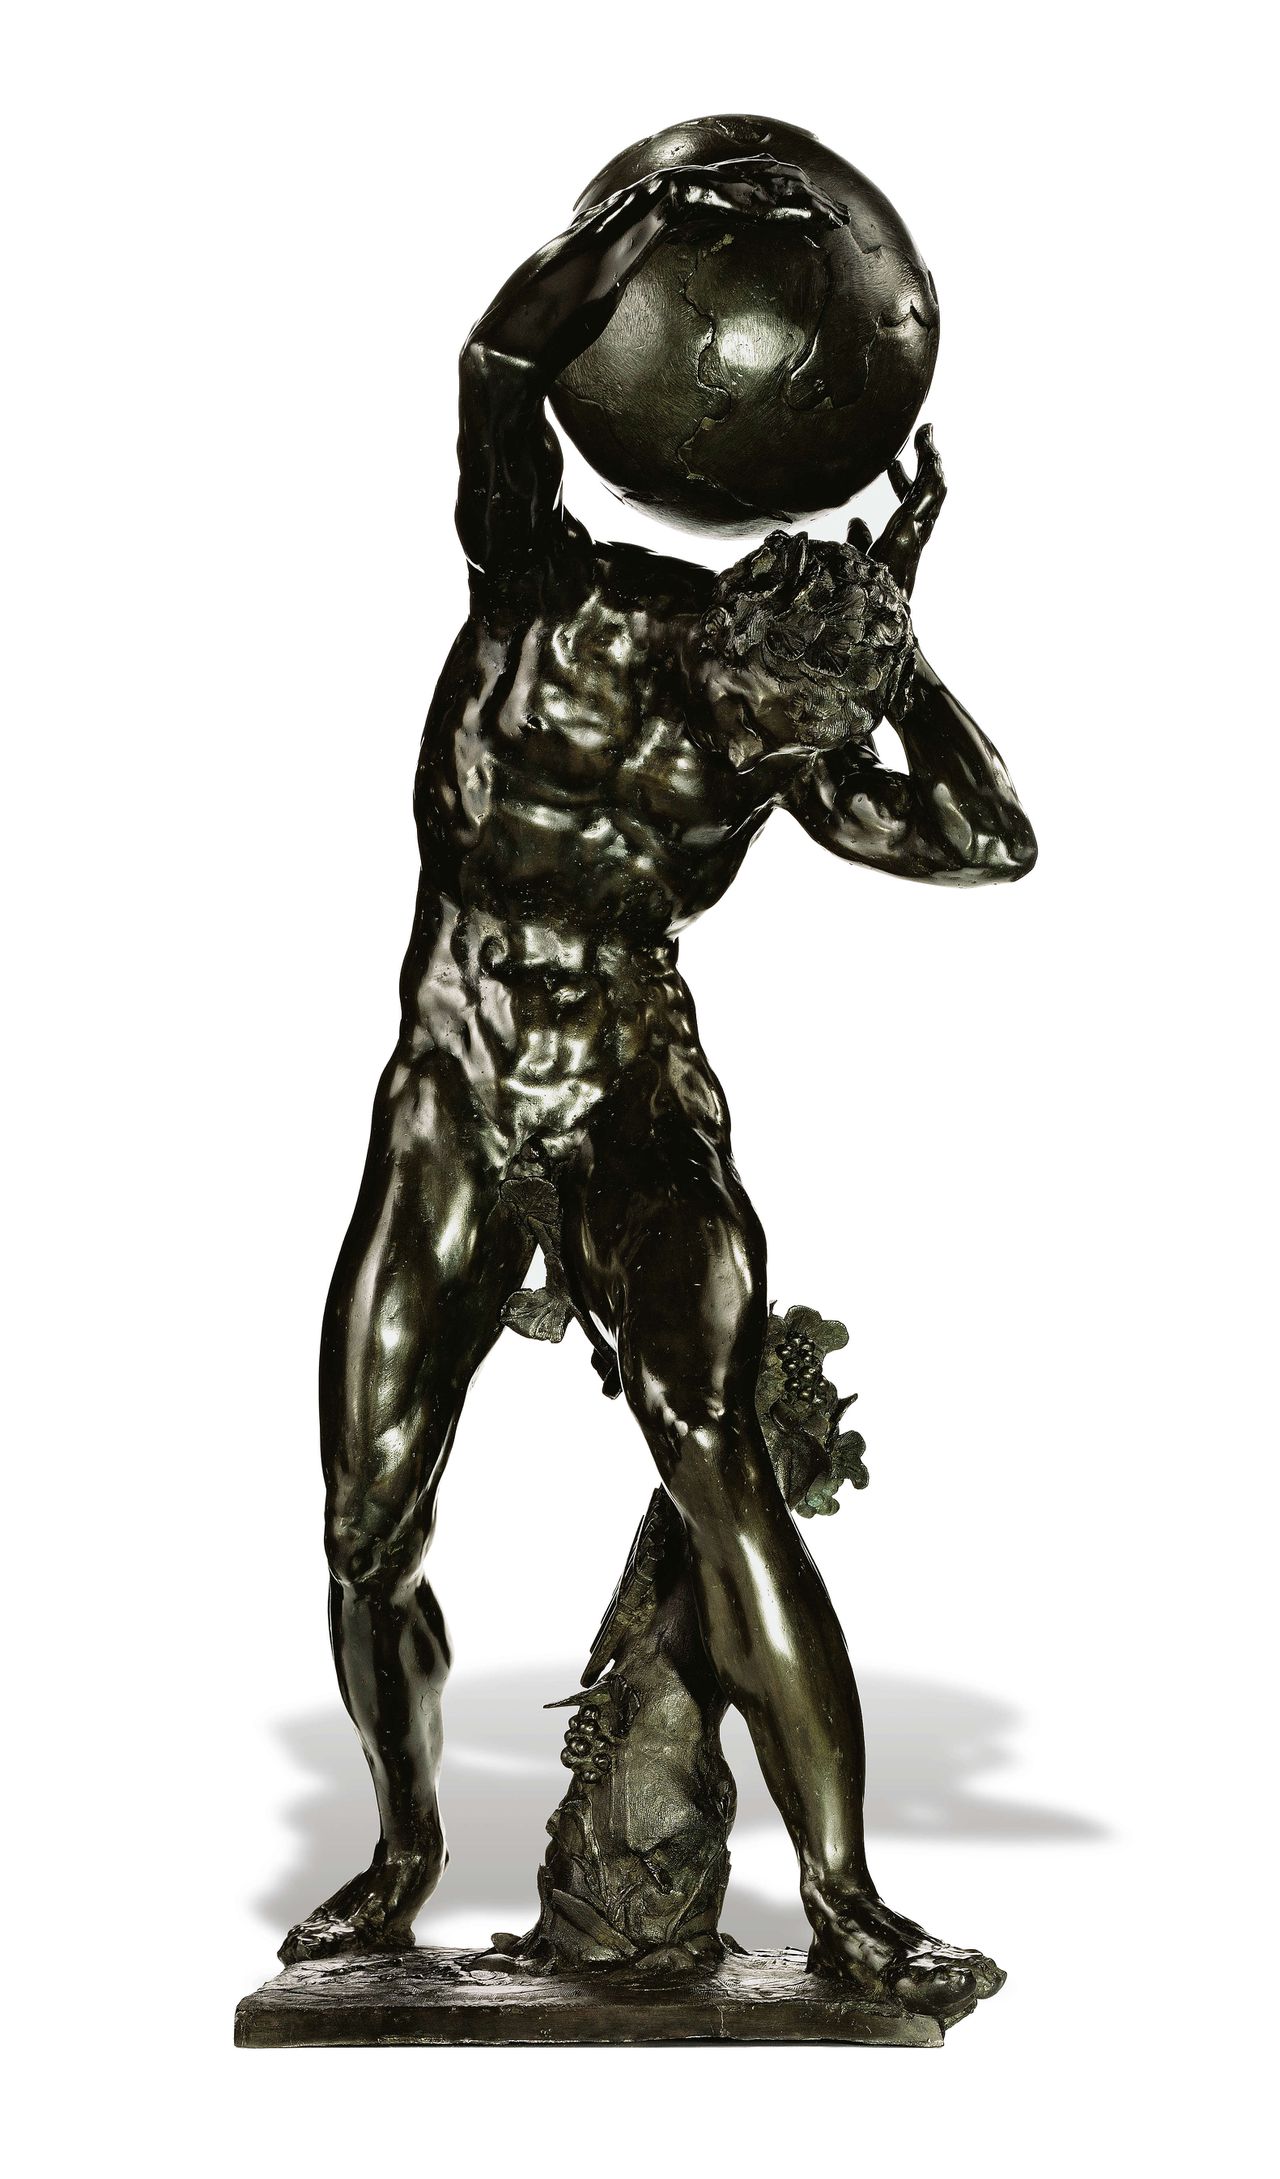 Het bronzen beeld is 109 centimeter. De bol is pas later, rond 1700 gemaakt, blijkt uit onderzoek. Kunsthistorici denken dat de figuur een Bacchant is - een volgeling van de wijngod Bacchus - die op zijn rug een mand met druiven of een zak met wijn droeg.